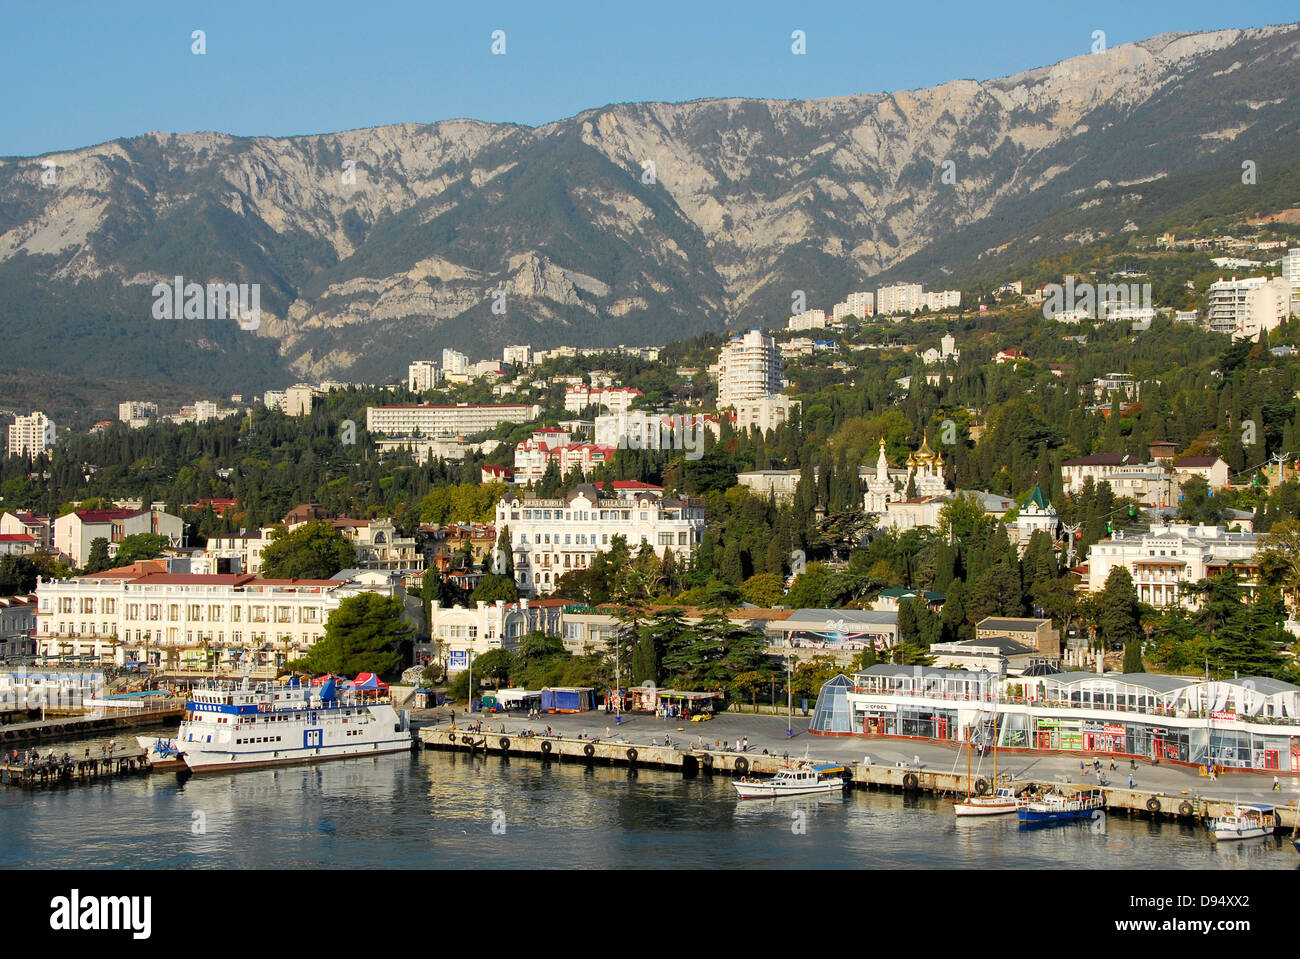 La ville portuaire de Yalta, en Crimée, sur la mer Noire. Banque D'Images